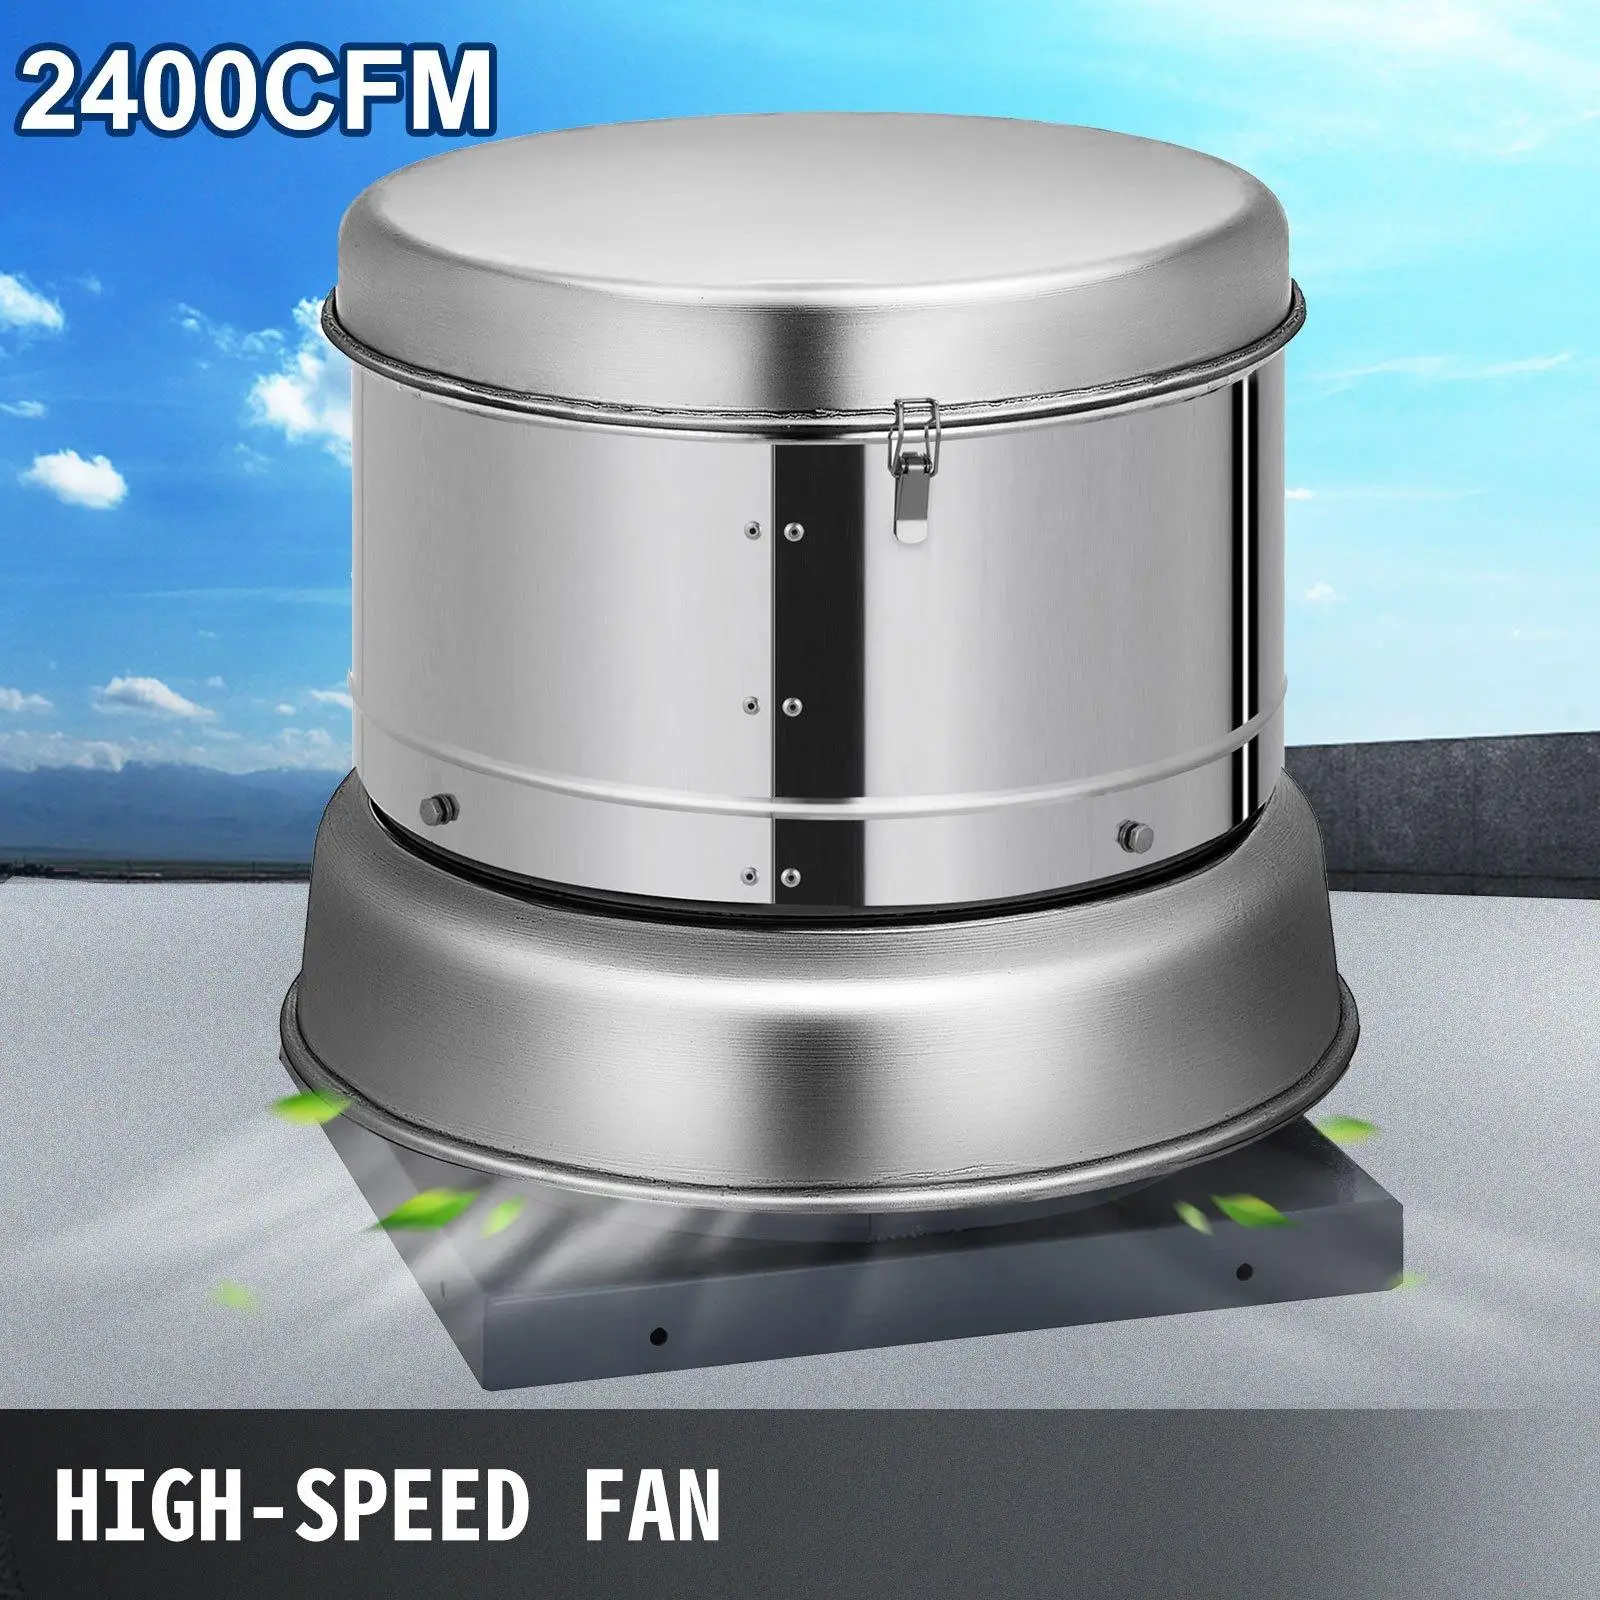 wide capacity fan